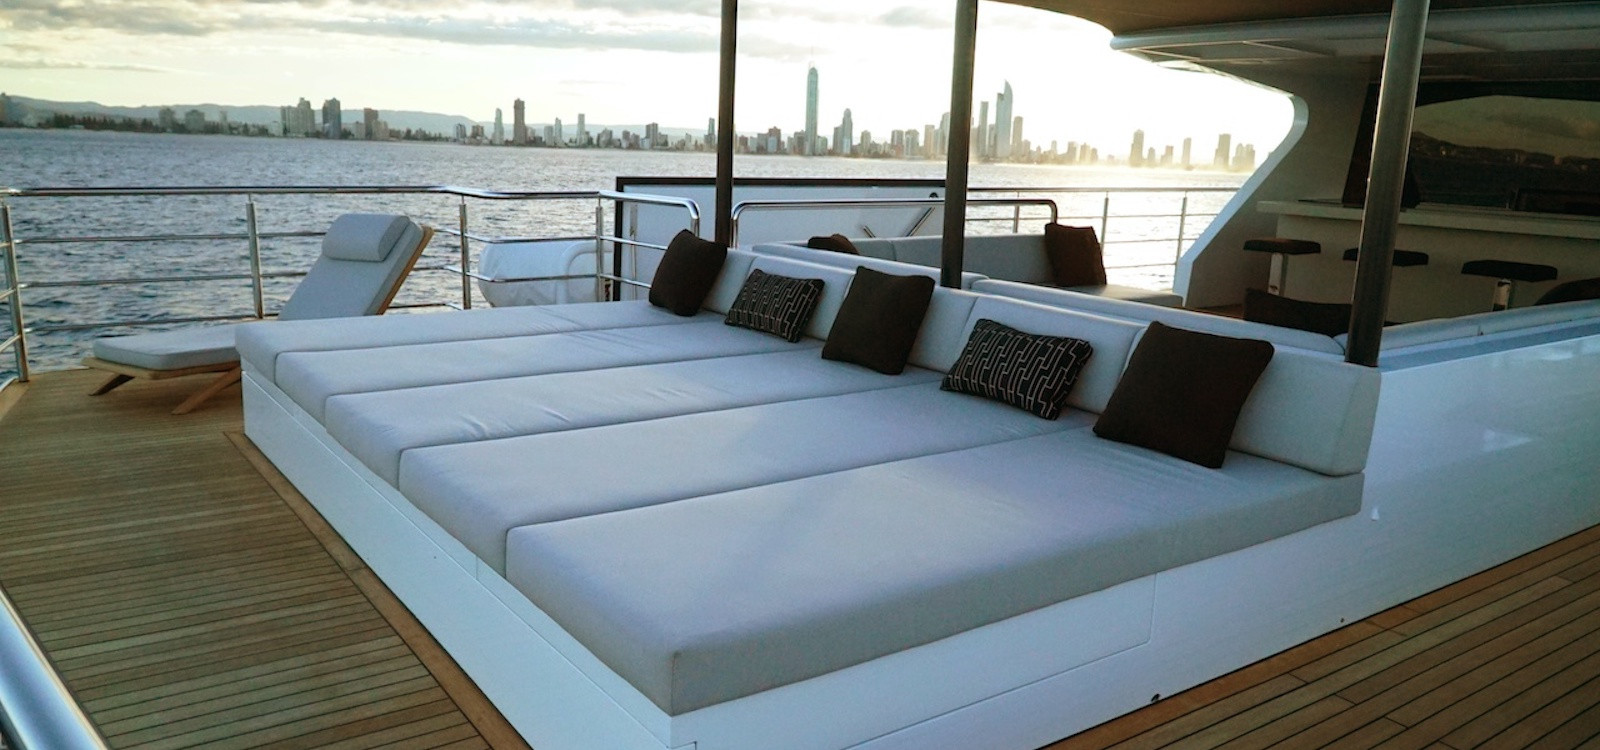 Sahana superyacht hire sunbeds on top deck